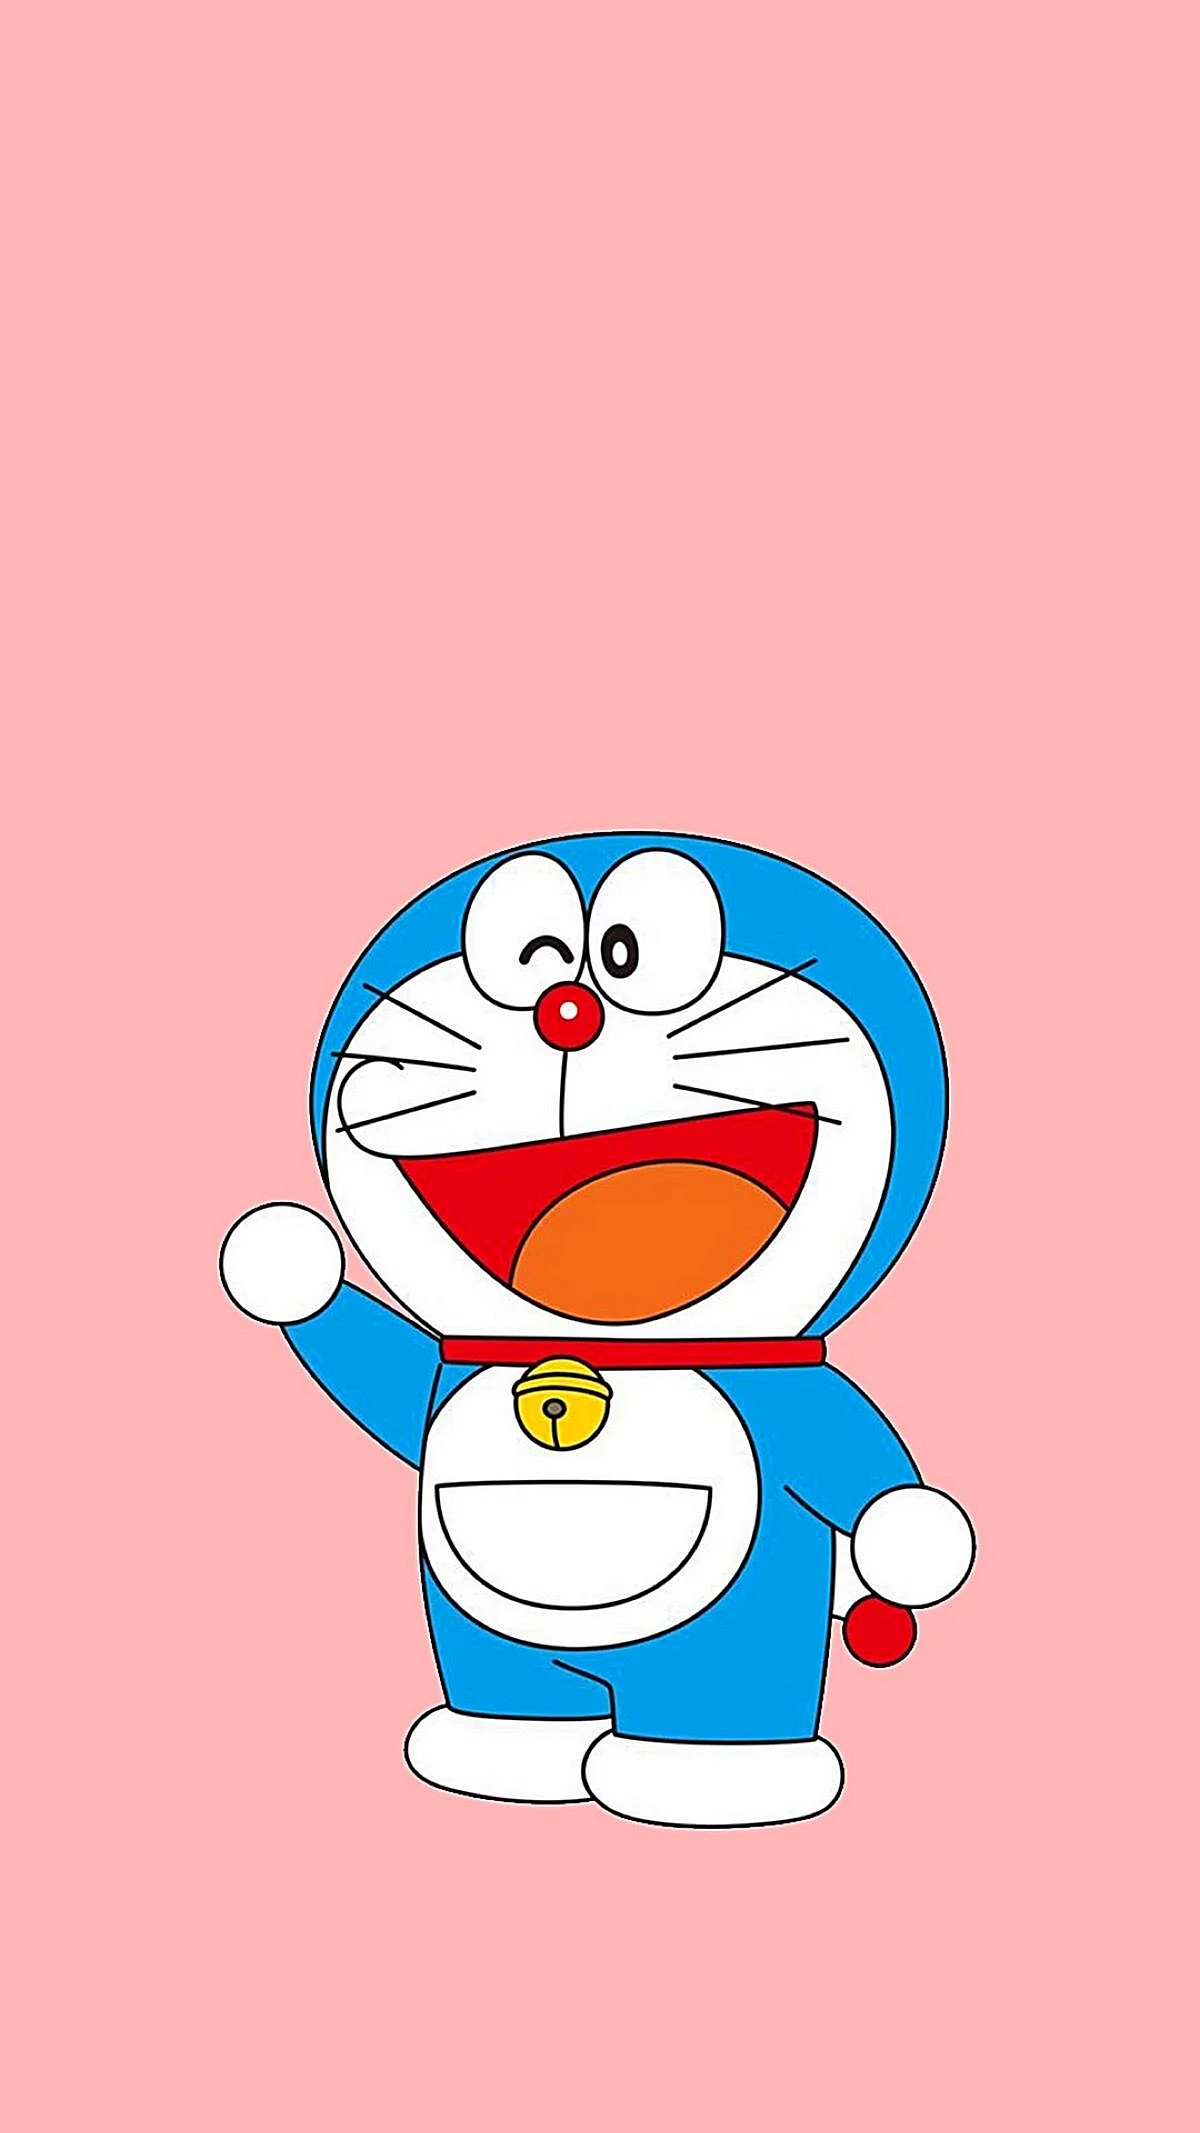 Doraemon 2021 Wallpaper For iPhone